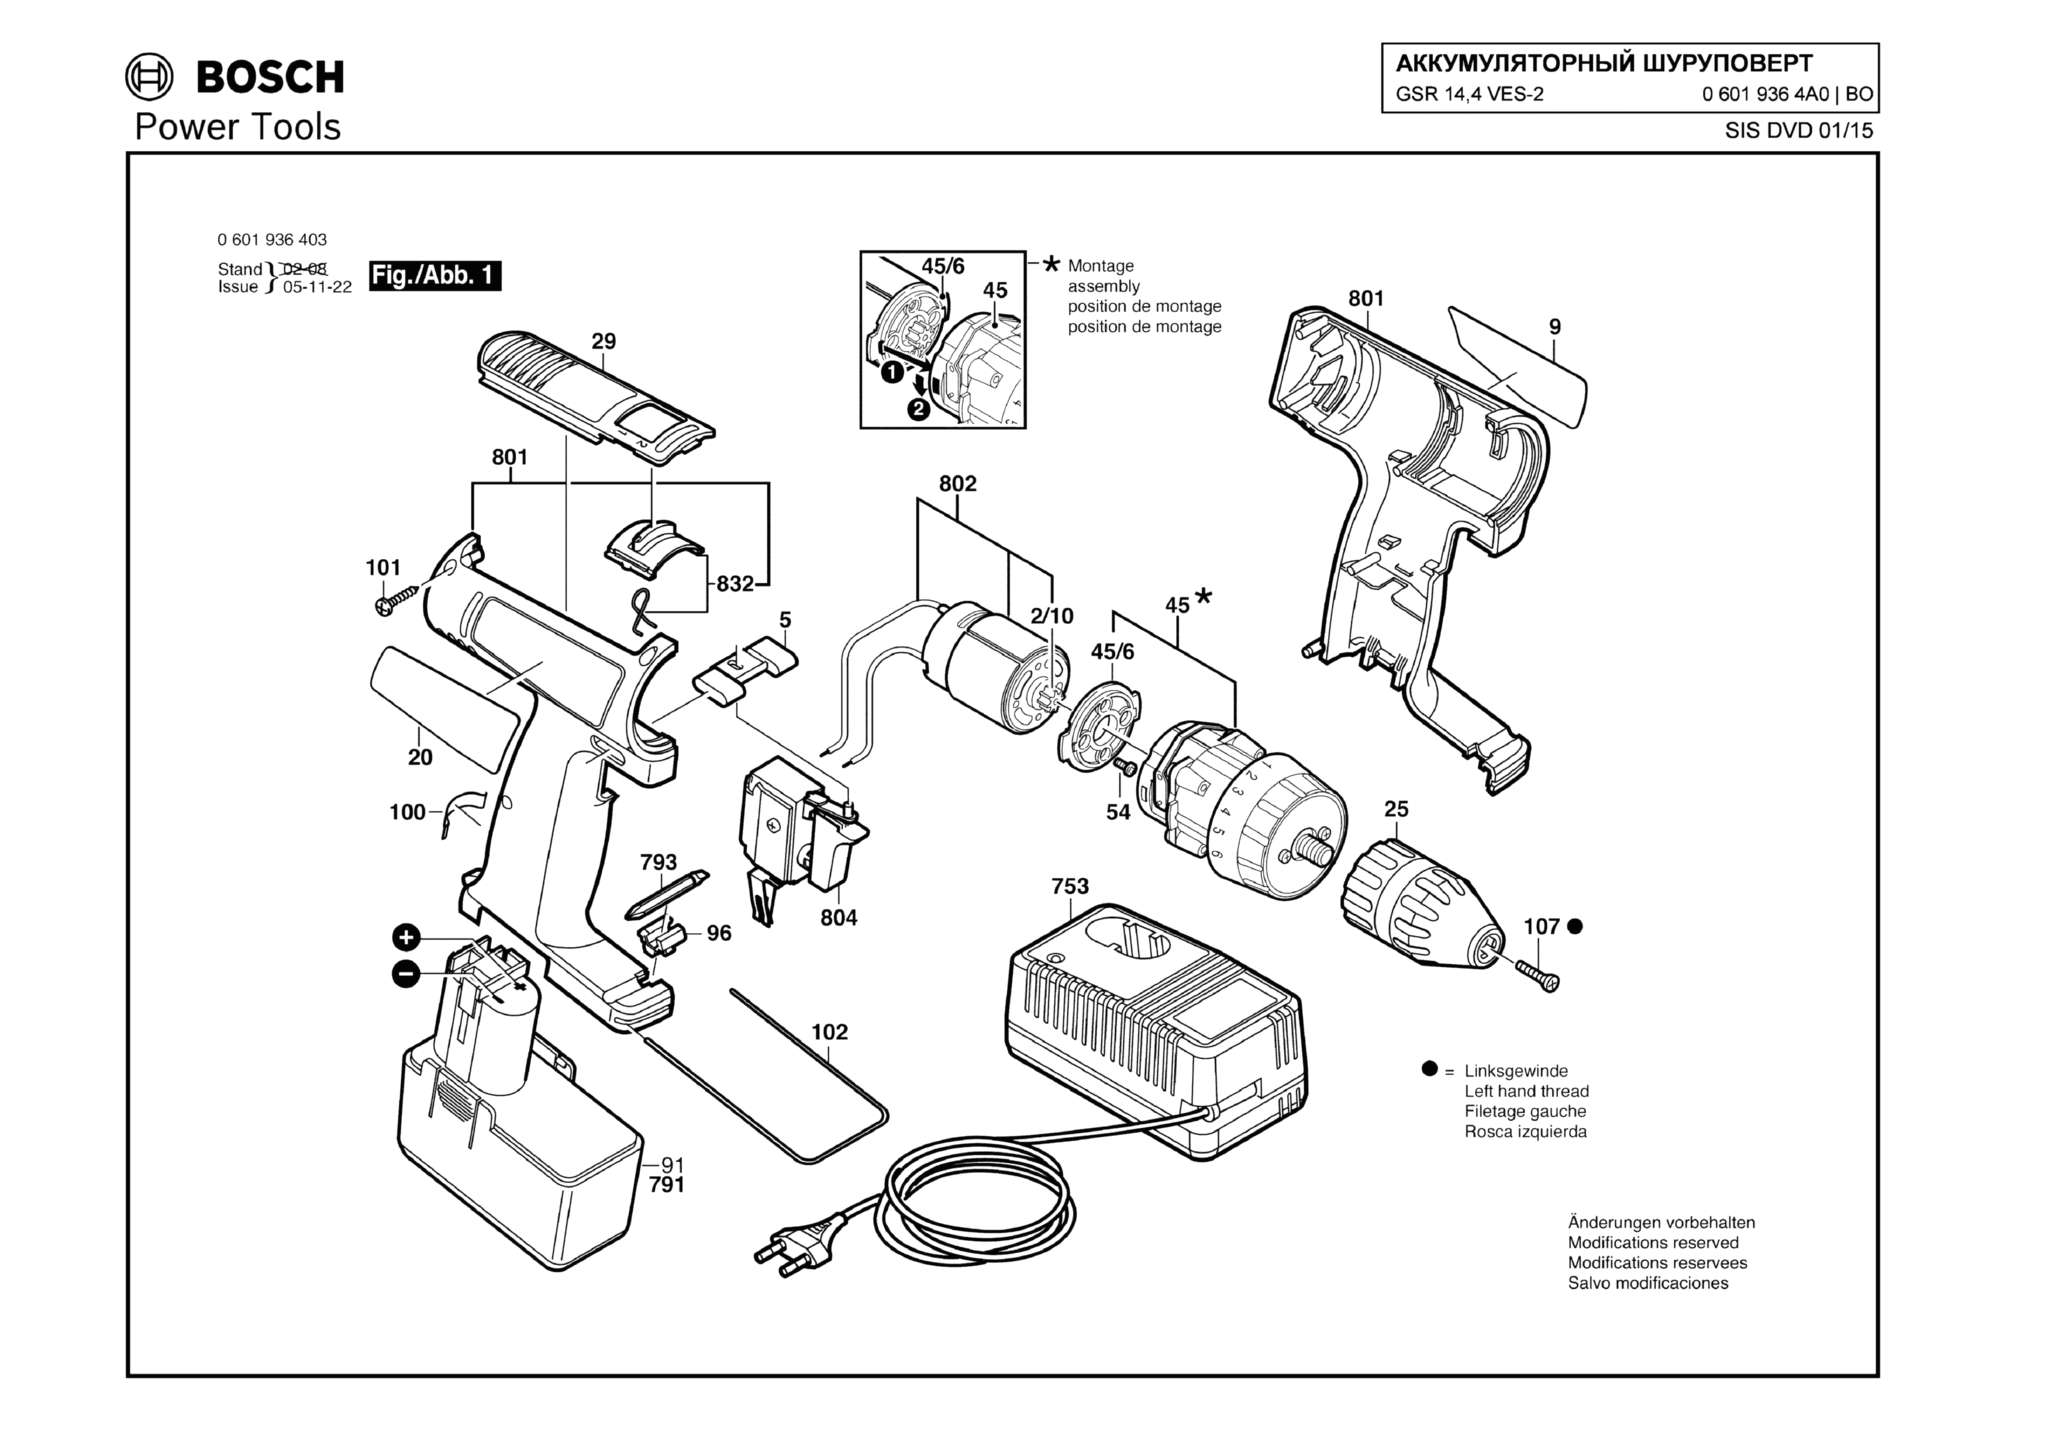 Запчасти, схема и деталировка Bosch GSR 14,4 VES-2 (ТИП 06019364A0)